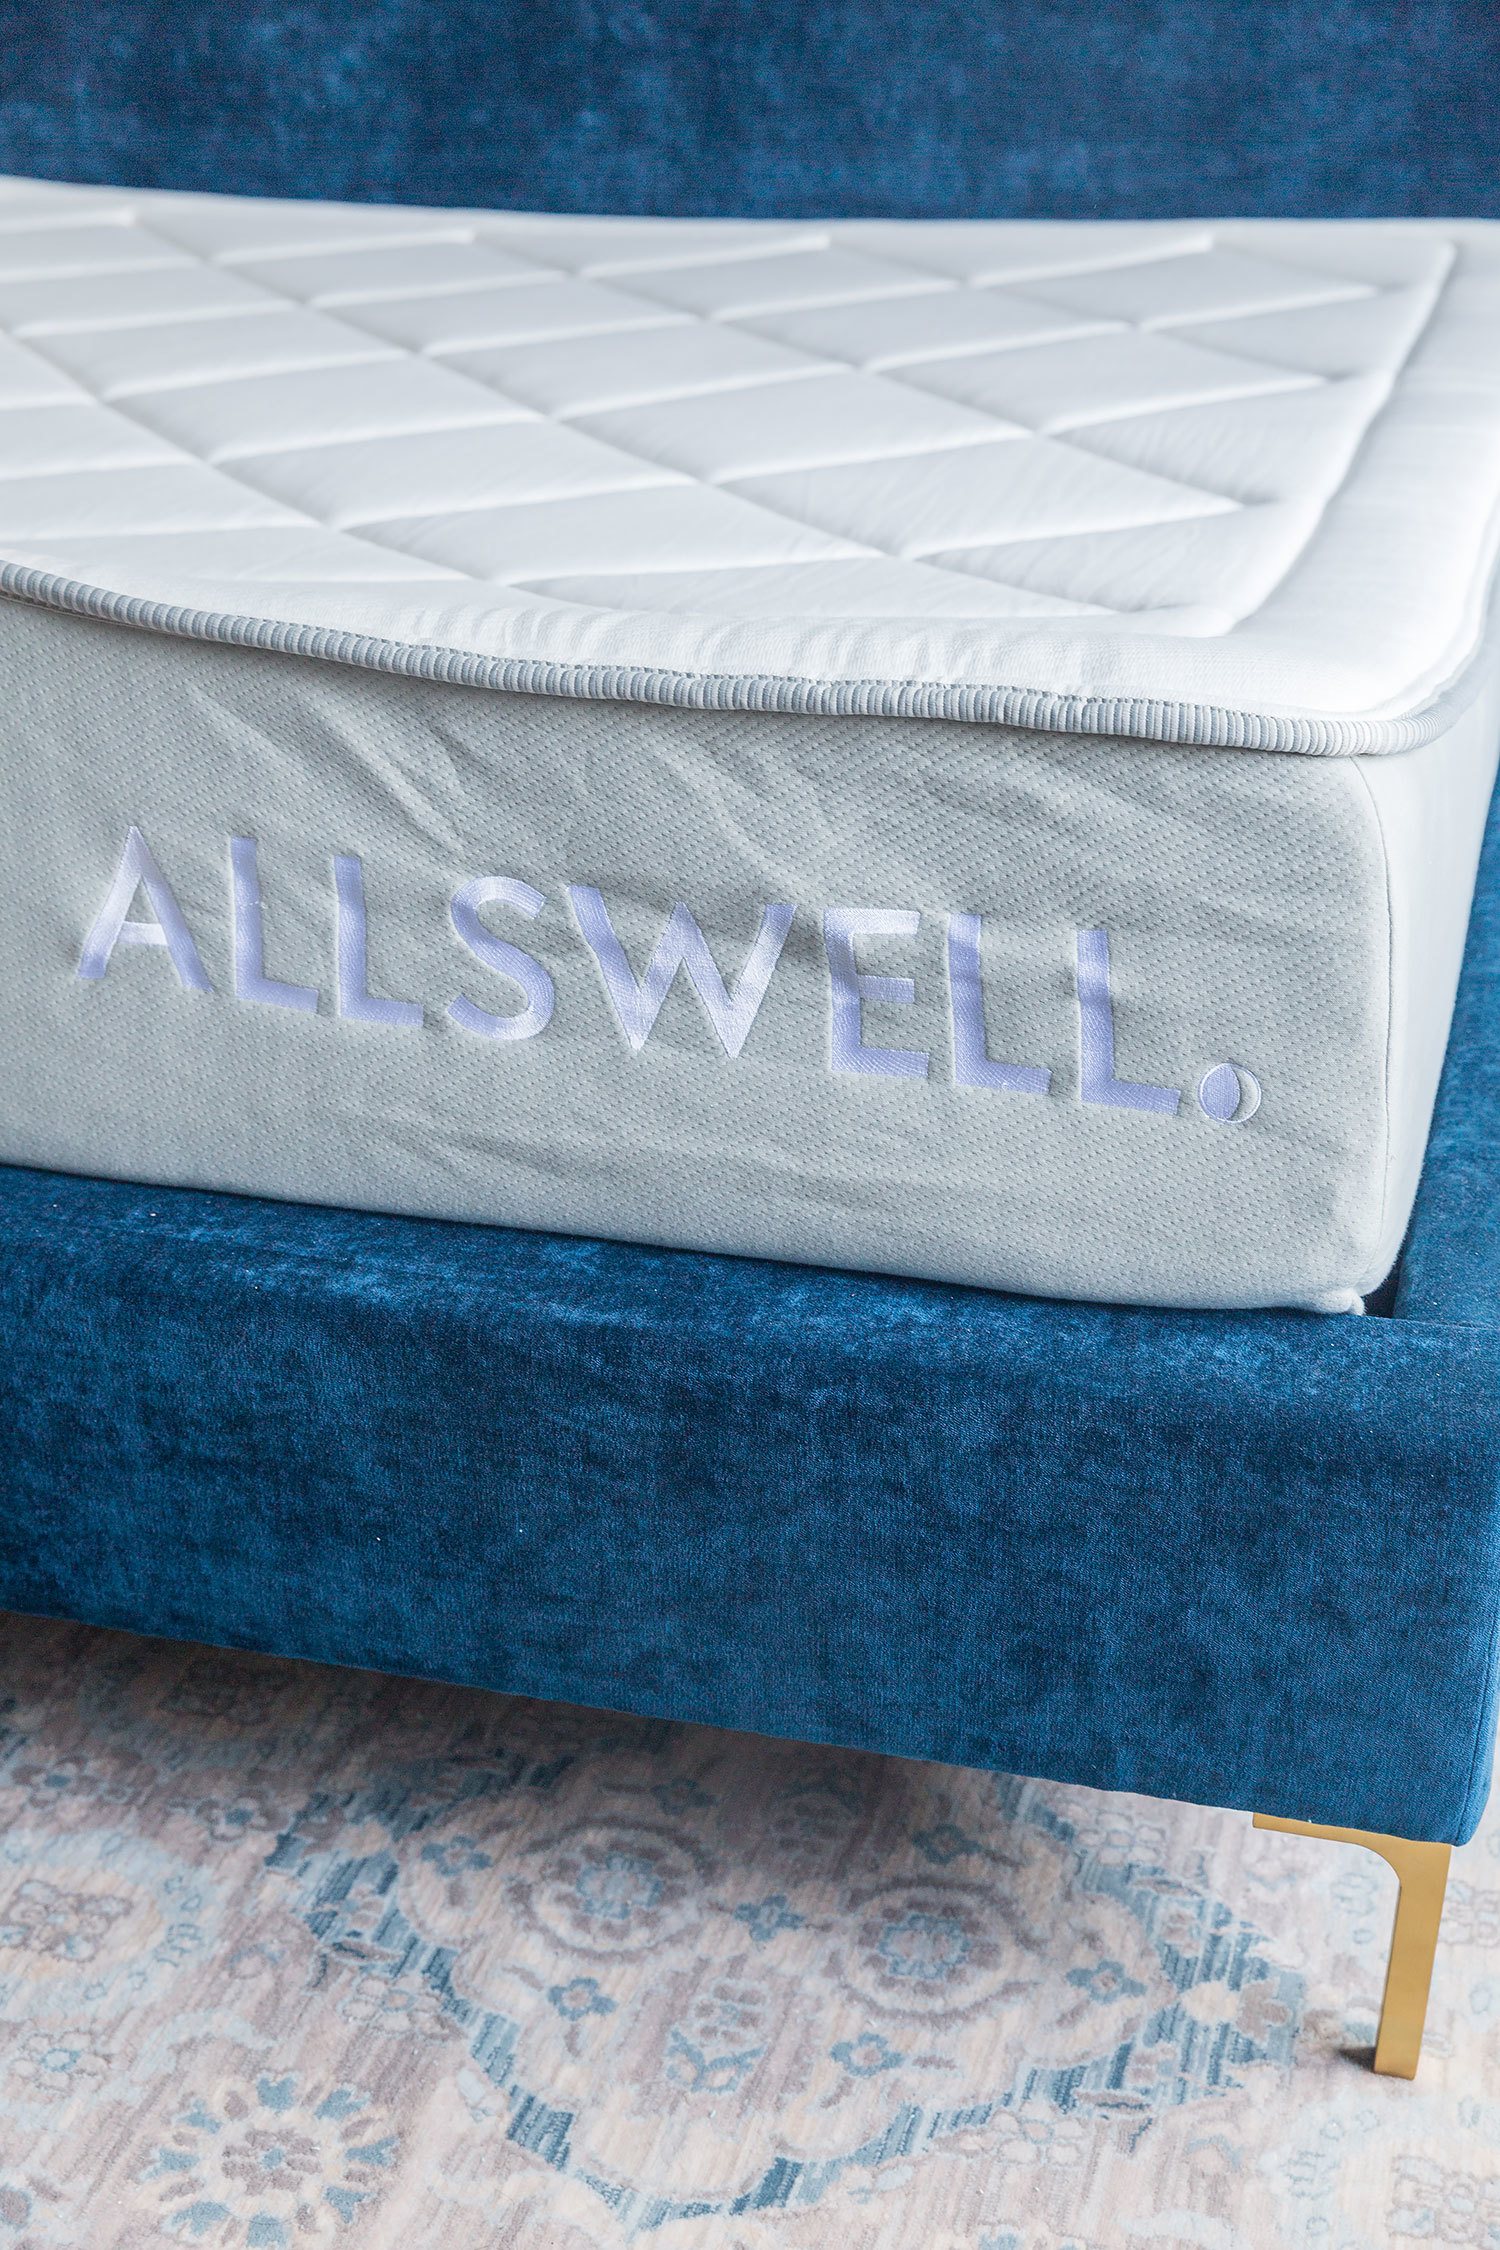 Allswell mattress